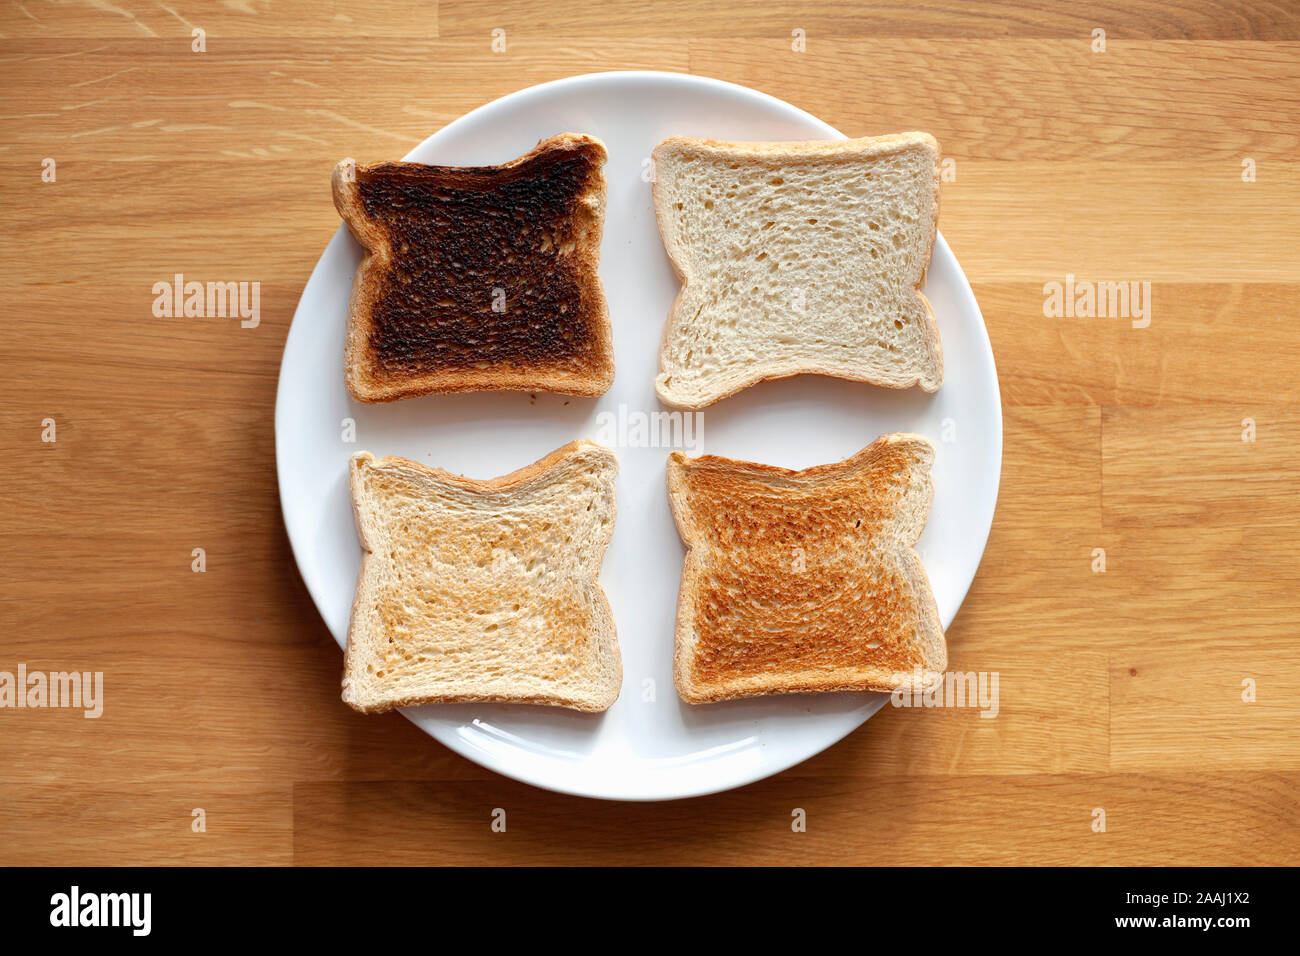 Four sliced bread on plate. Fresh, light toast, crispy toast and